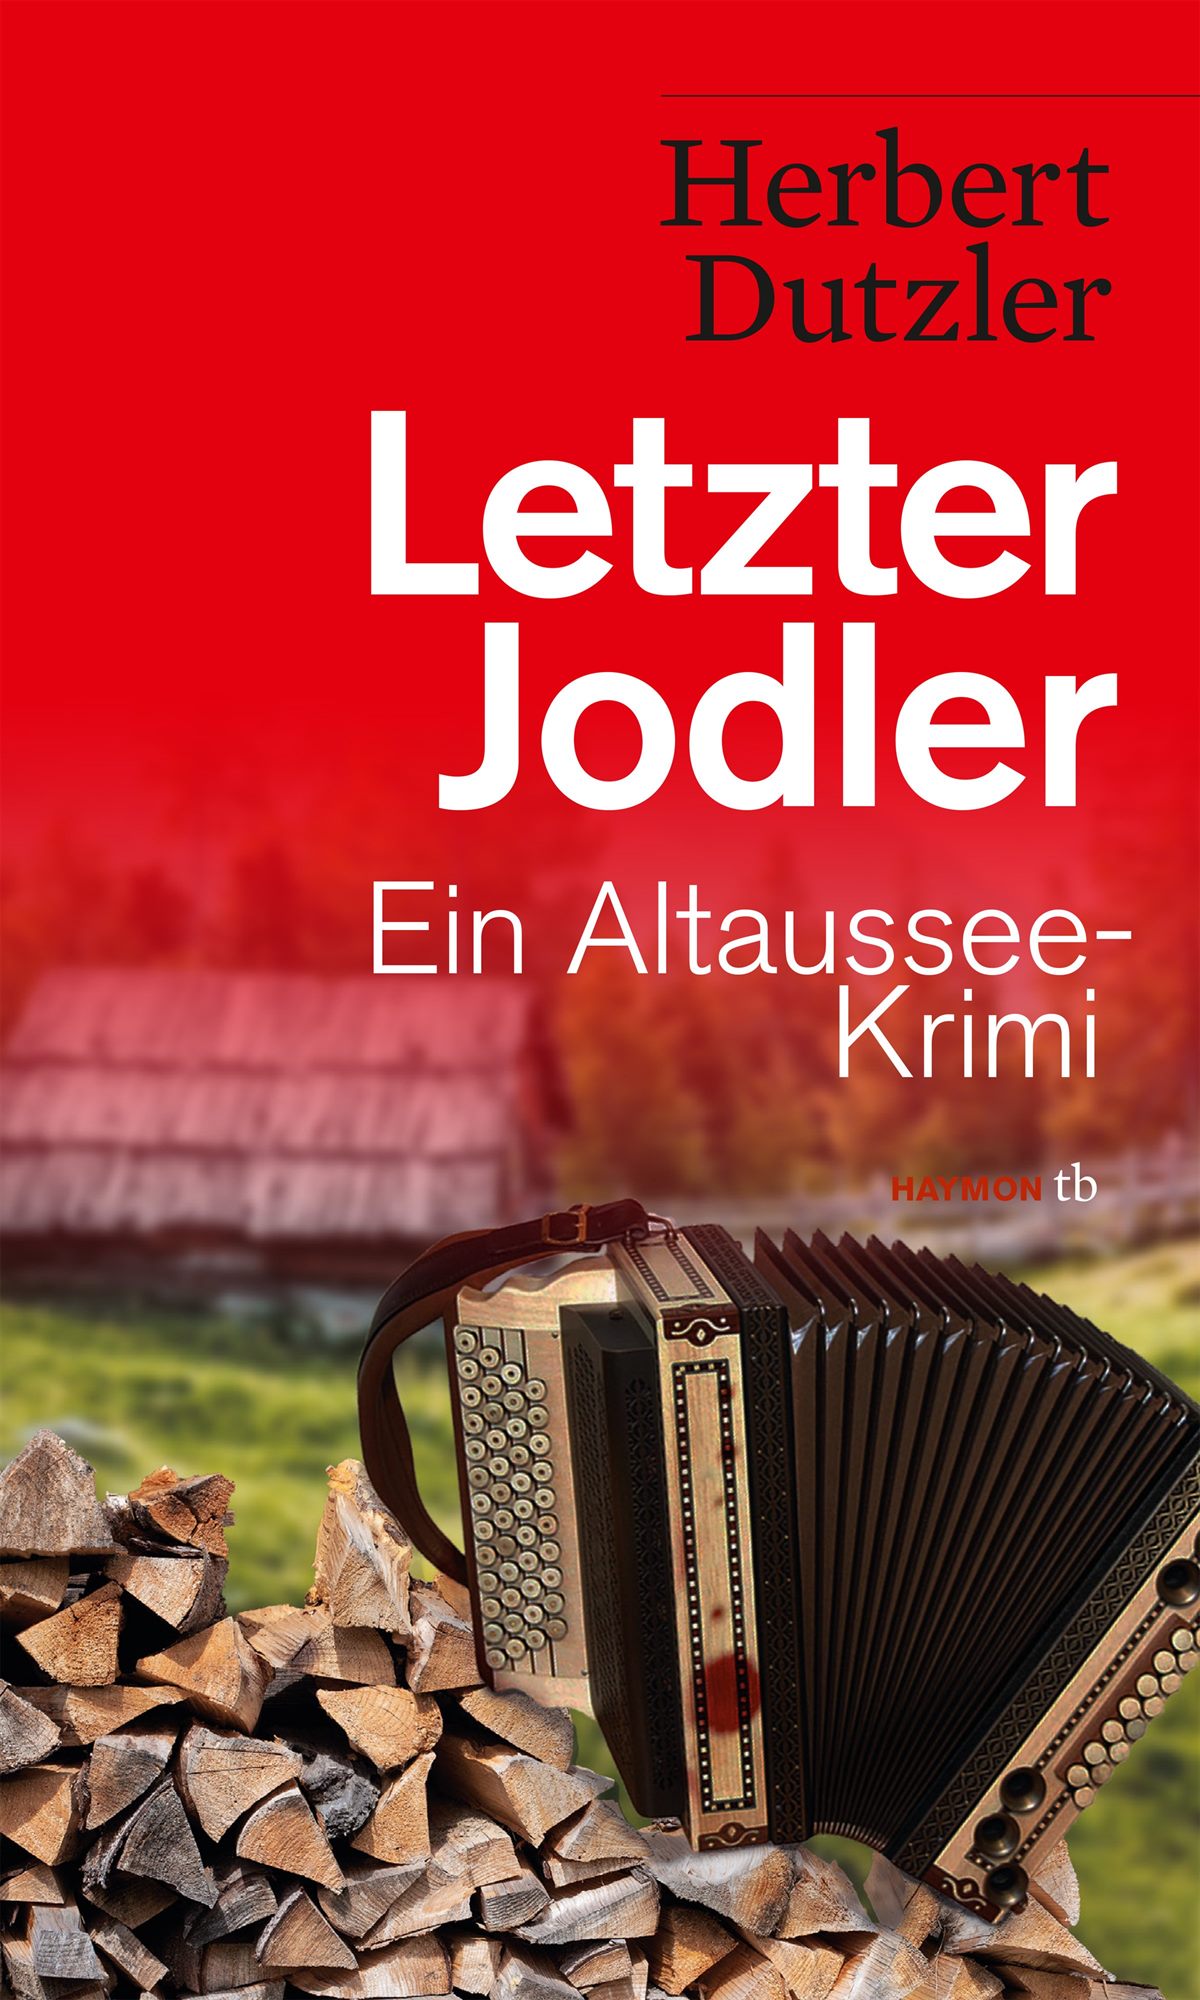 Dutzler - Letzter Jodler